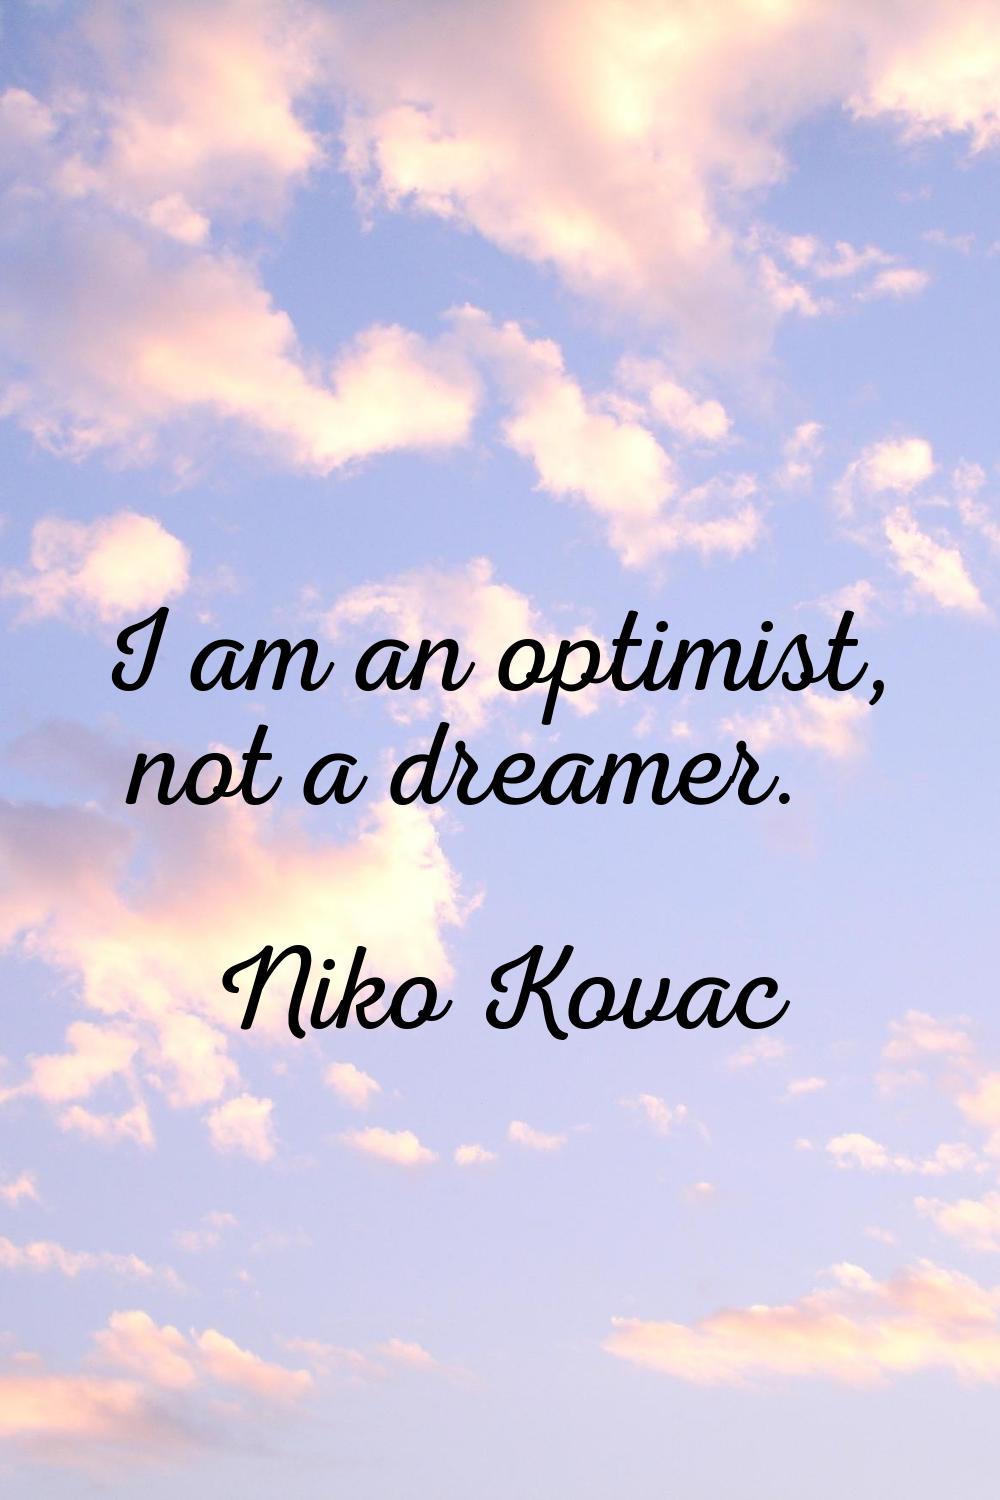 I am an optimist, not a dreamer.